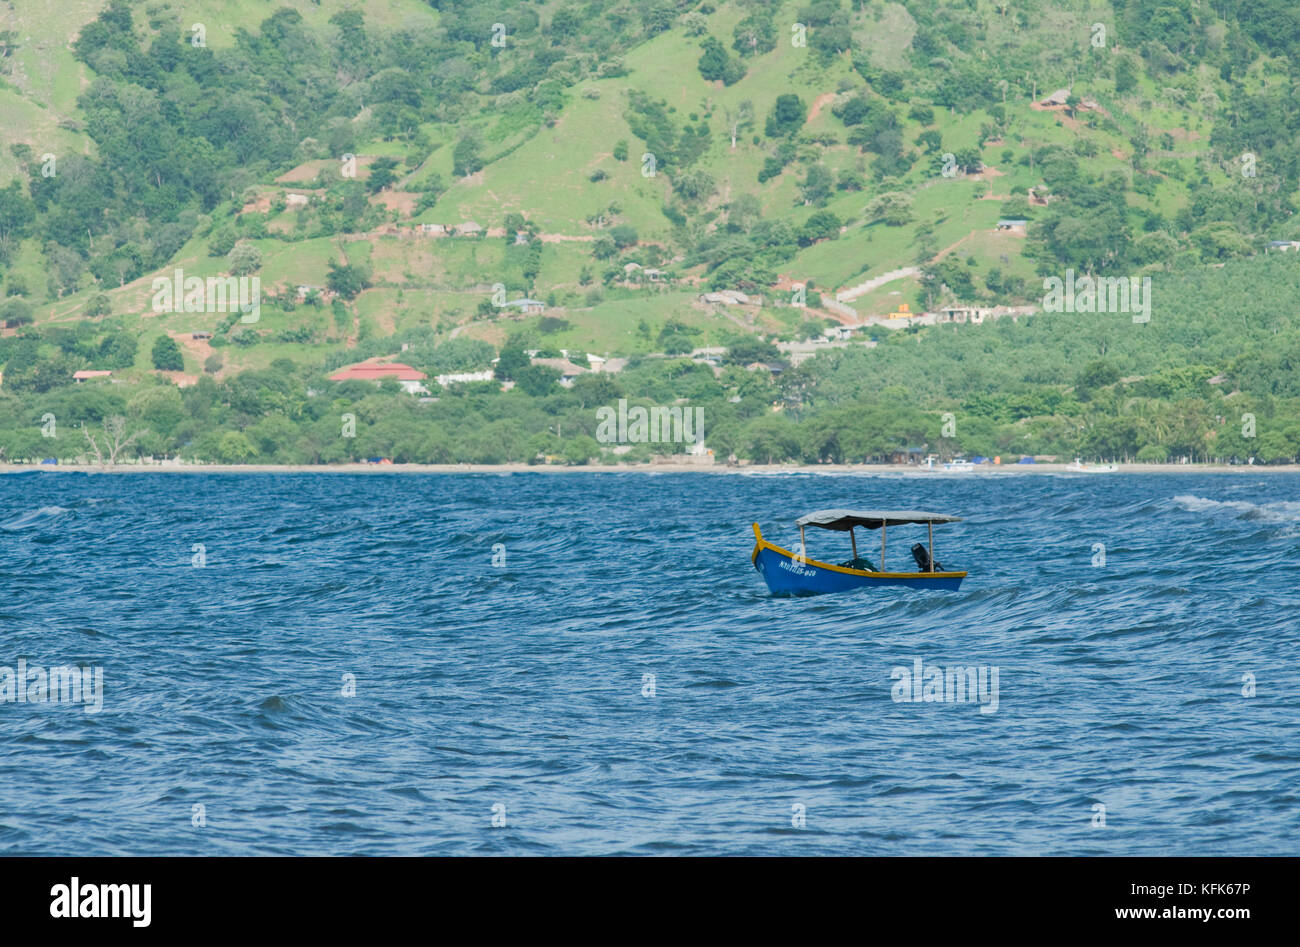 Fishing boat at Dili, Timor-Leste (East Timor) Stock Photo